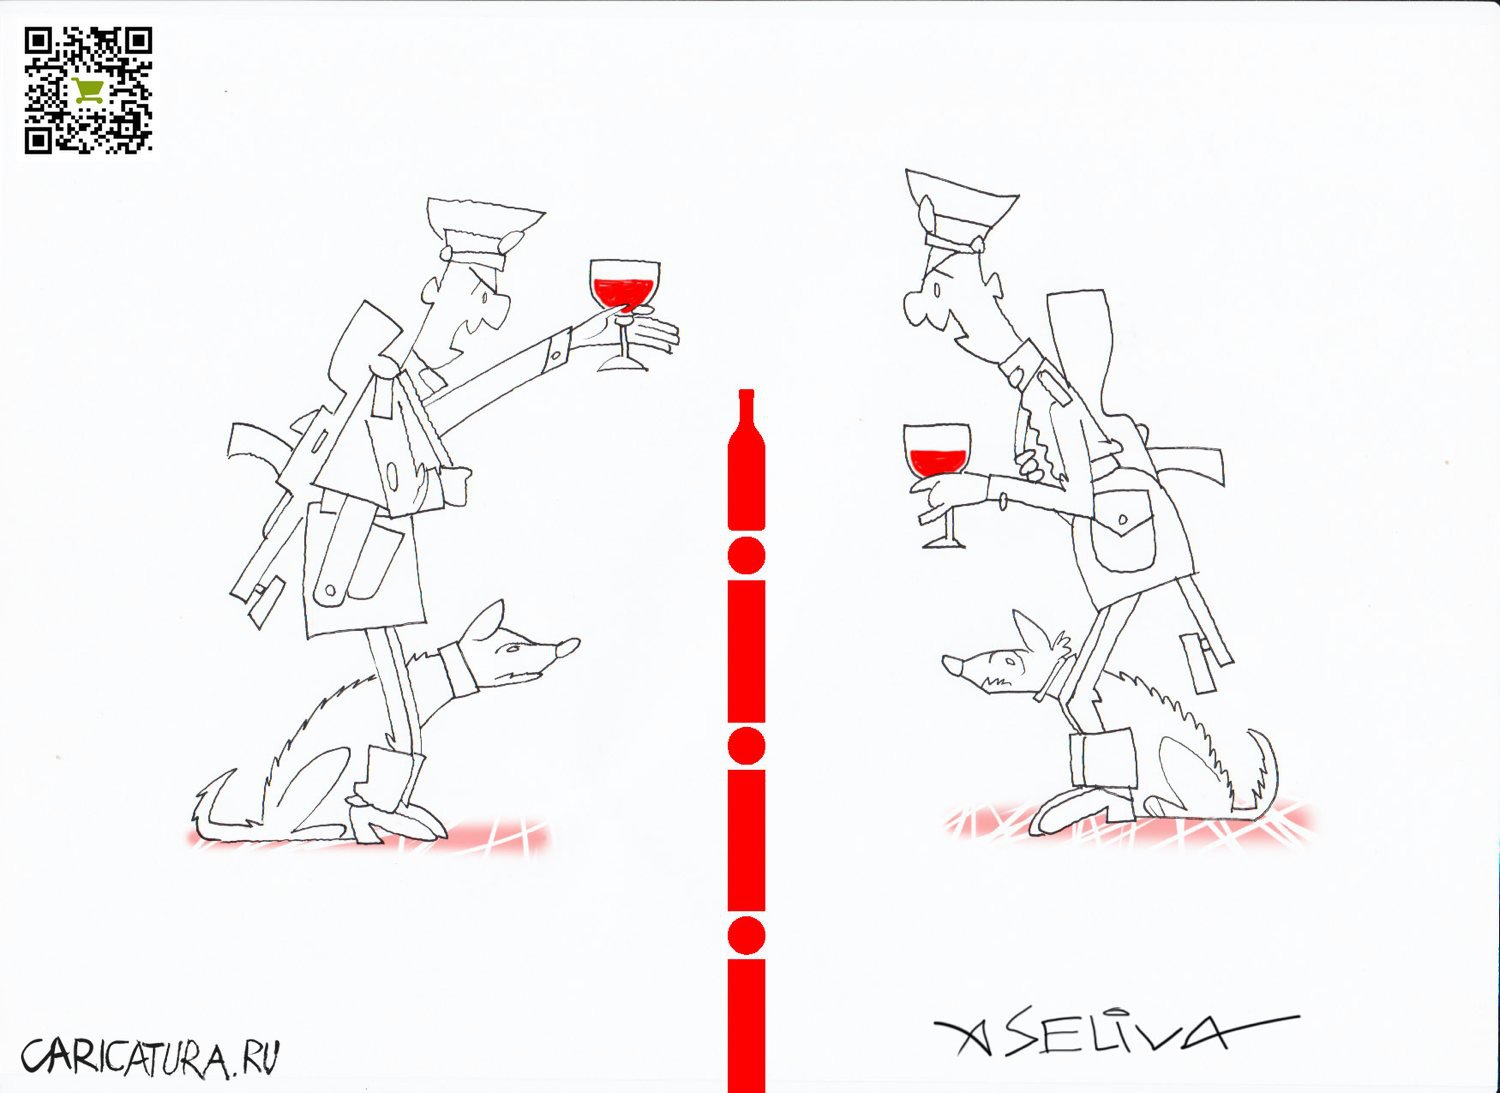 Карикатура "Самой эффективное средство решения приграничных к", Андрей Селиванов